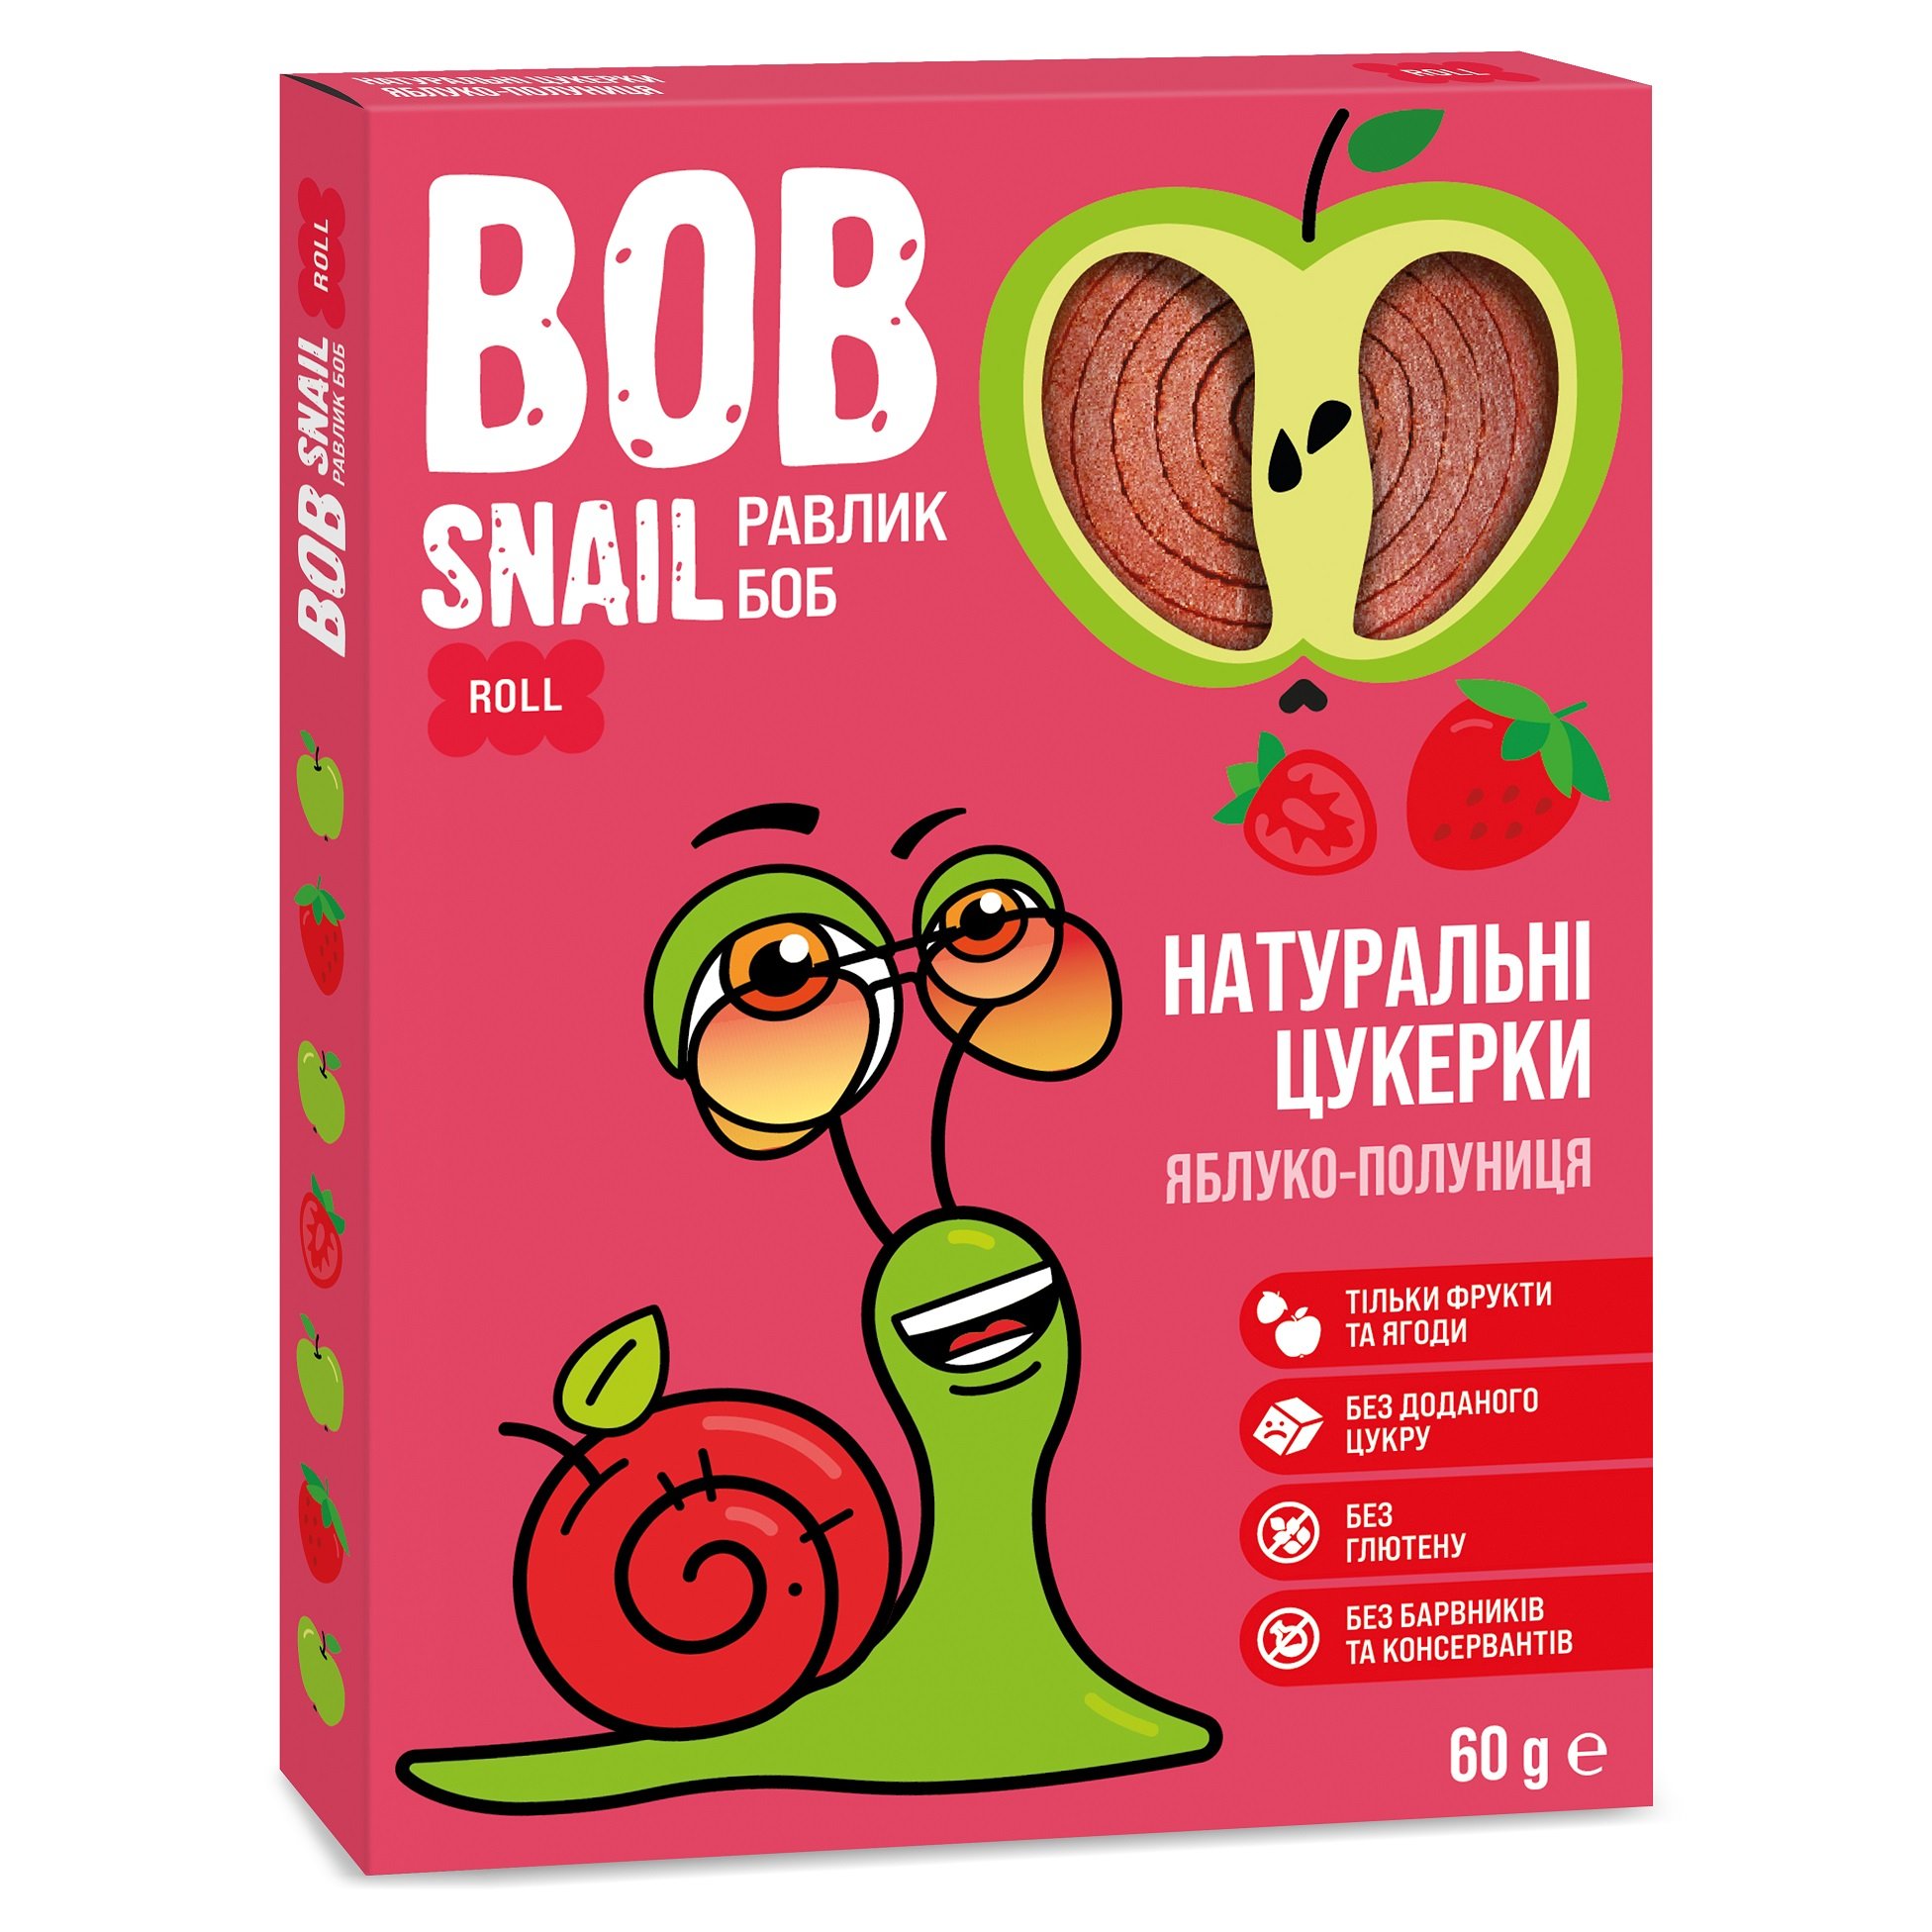 Натуральні цукерки Bob Snail Равлик Боб Яблуко та Полуниця, 60 г - фото 1